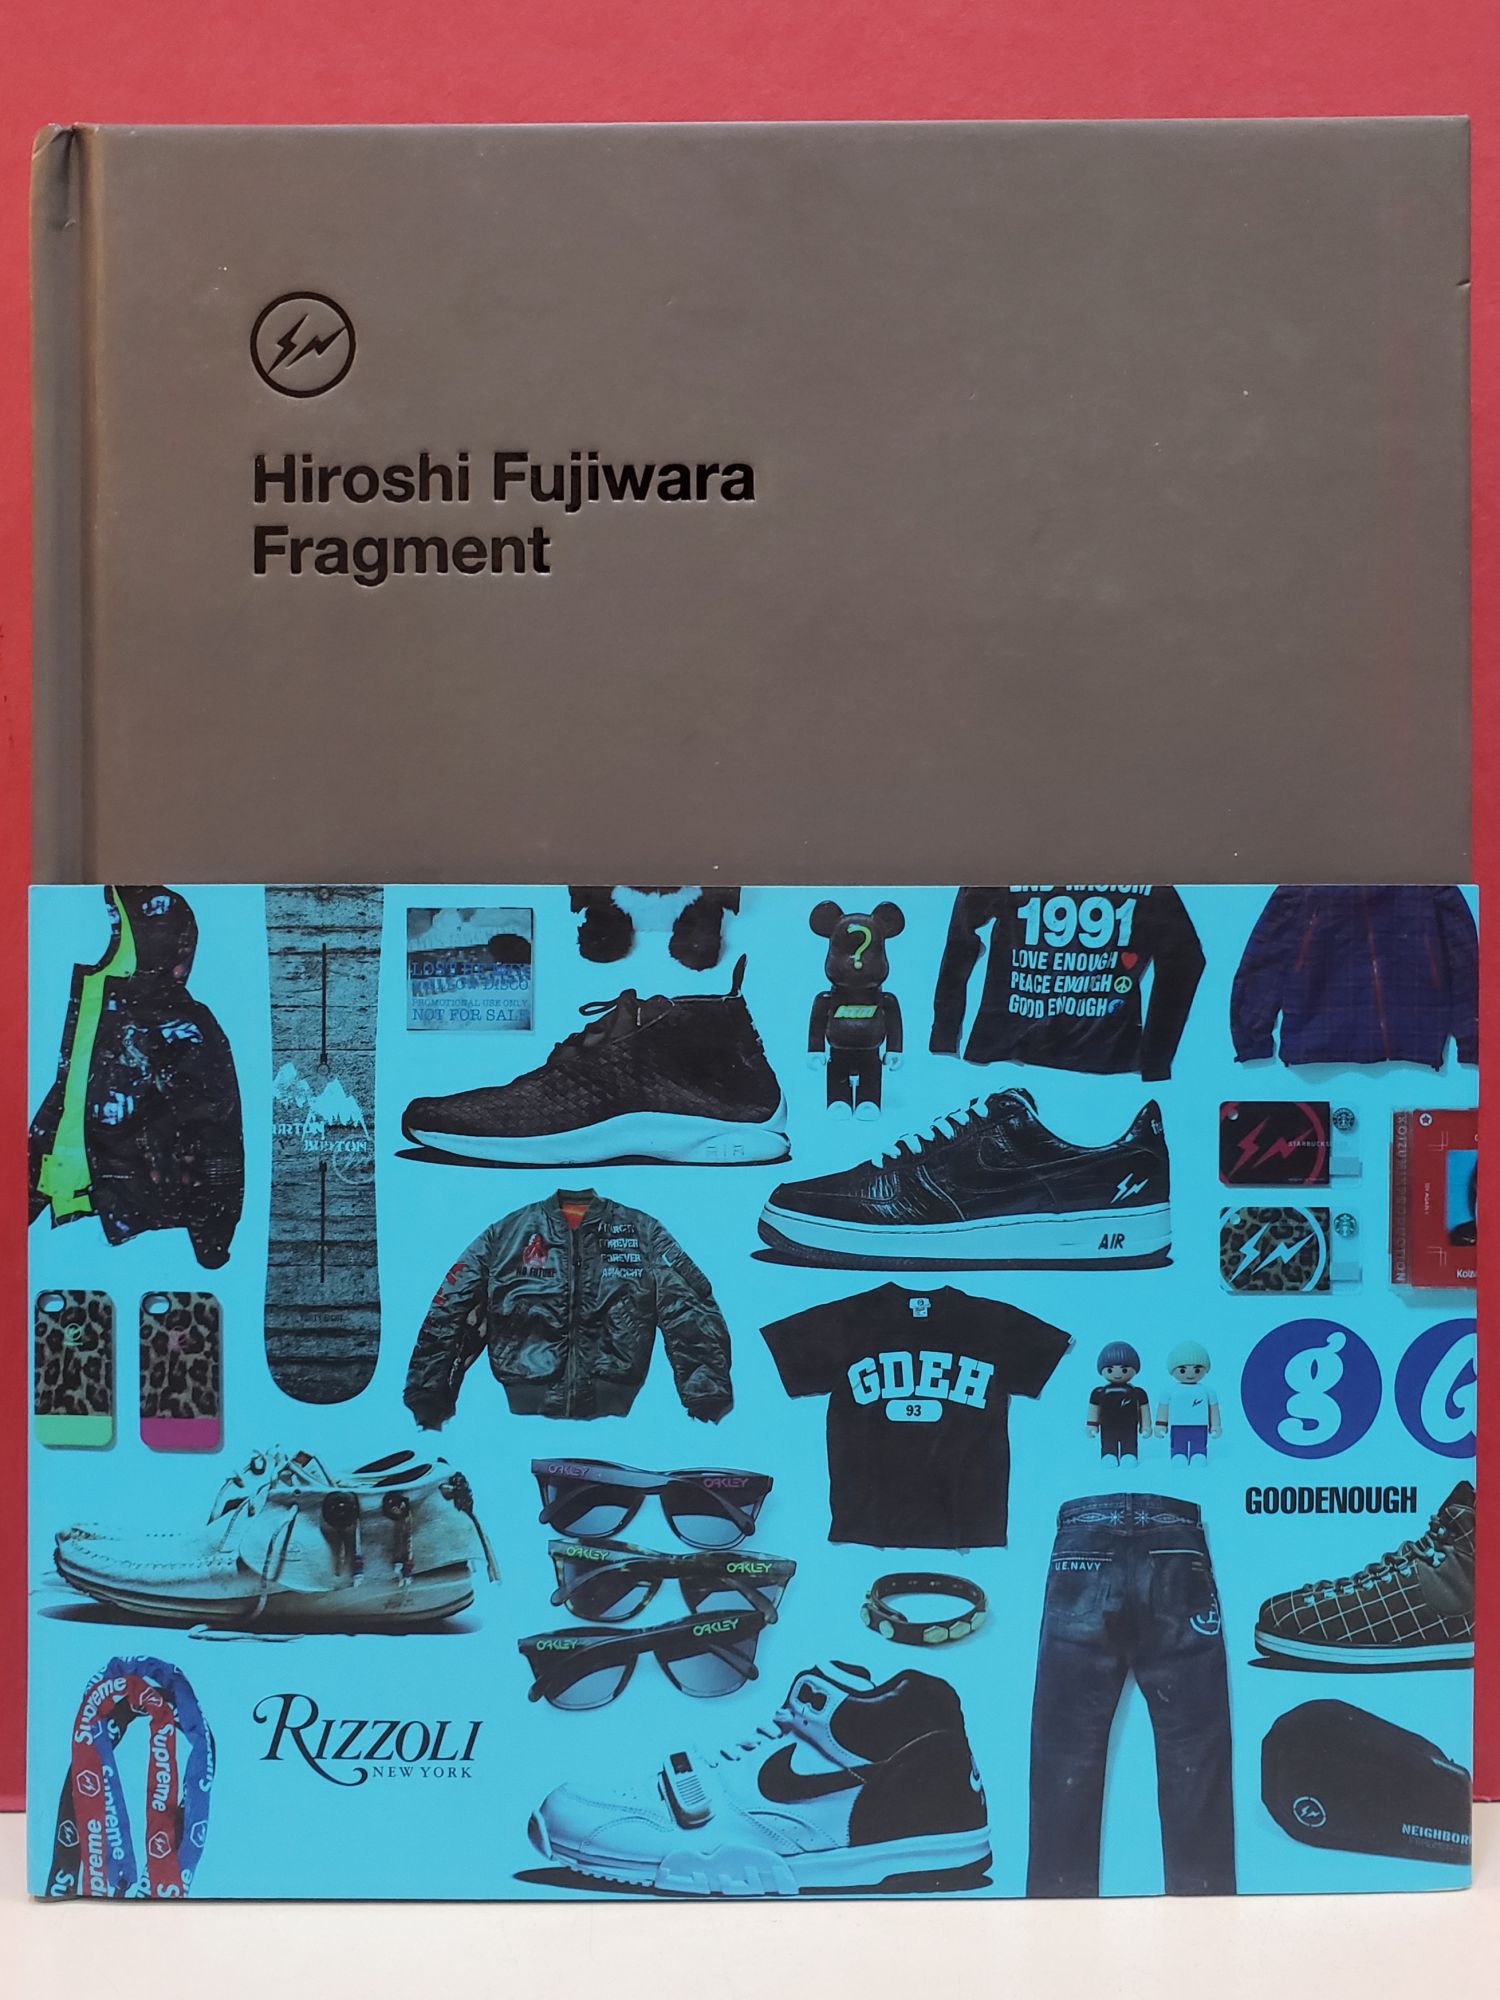 Hiroshi Fujiwara: Fragment by Ian Luna Hiroshi Fujiwara on Moe's Books